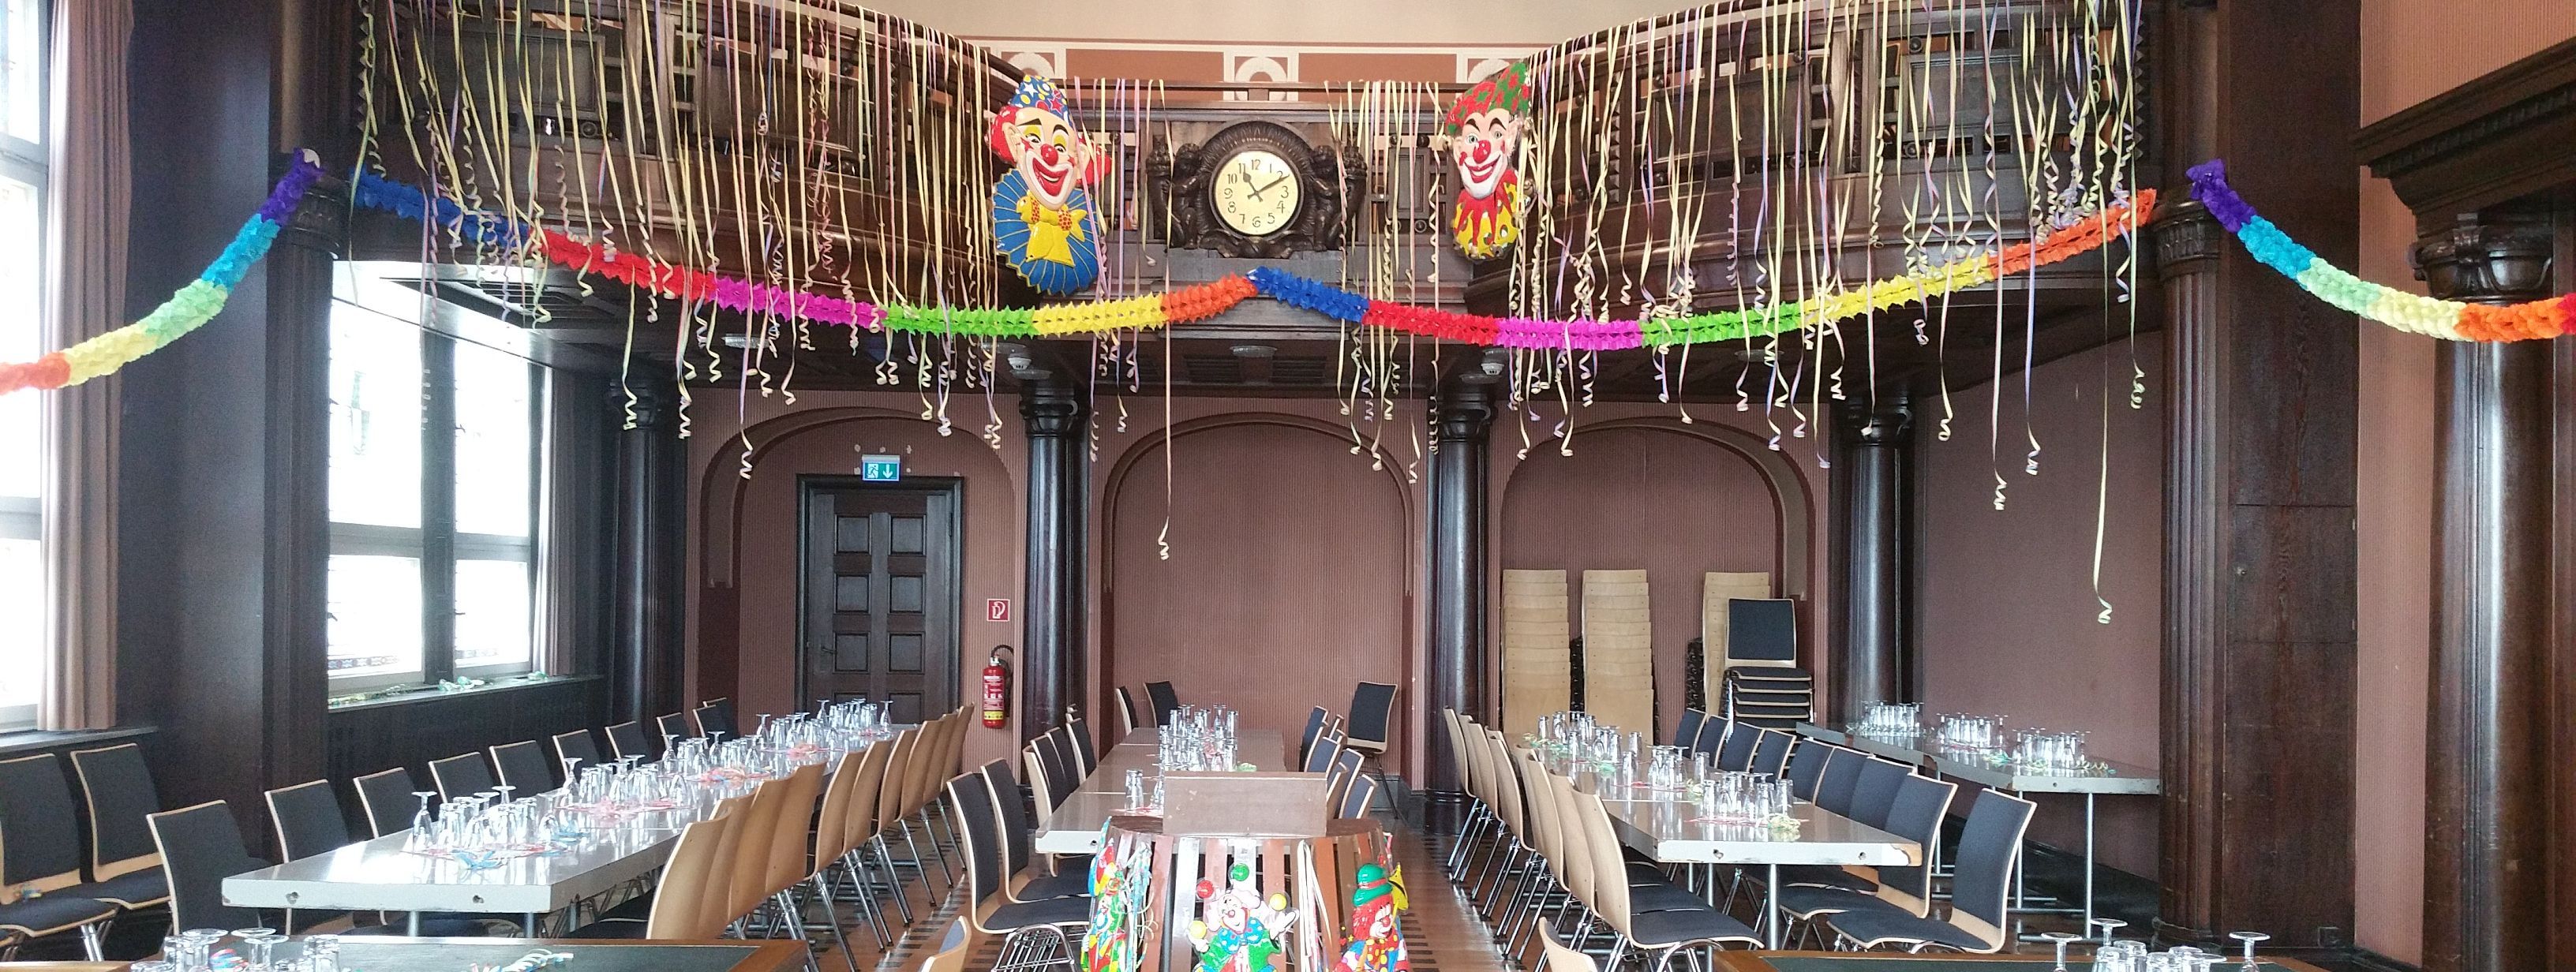 Der alte Ratssaal im Alten Rathaus in Menden ist bunt geschmückt. Von der Tribühne hängen Luftschlangen, in der Mitte des Raumes steht ein Rednerpult.